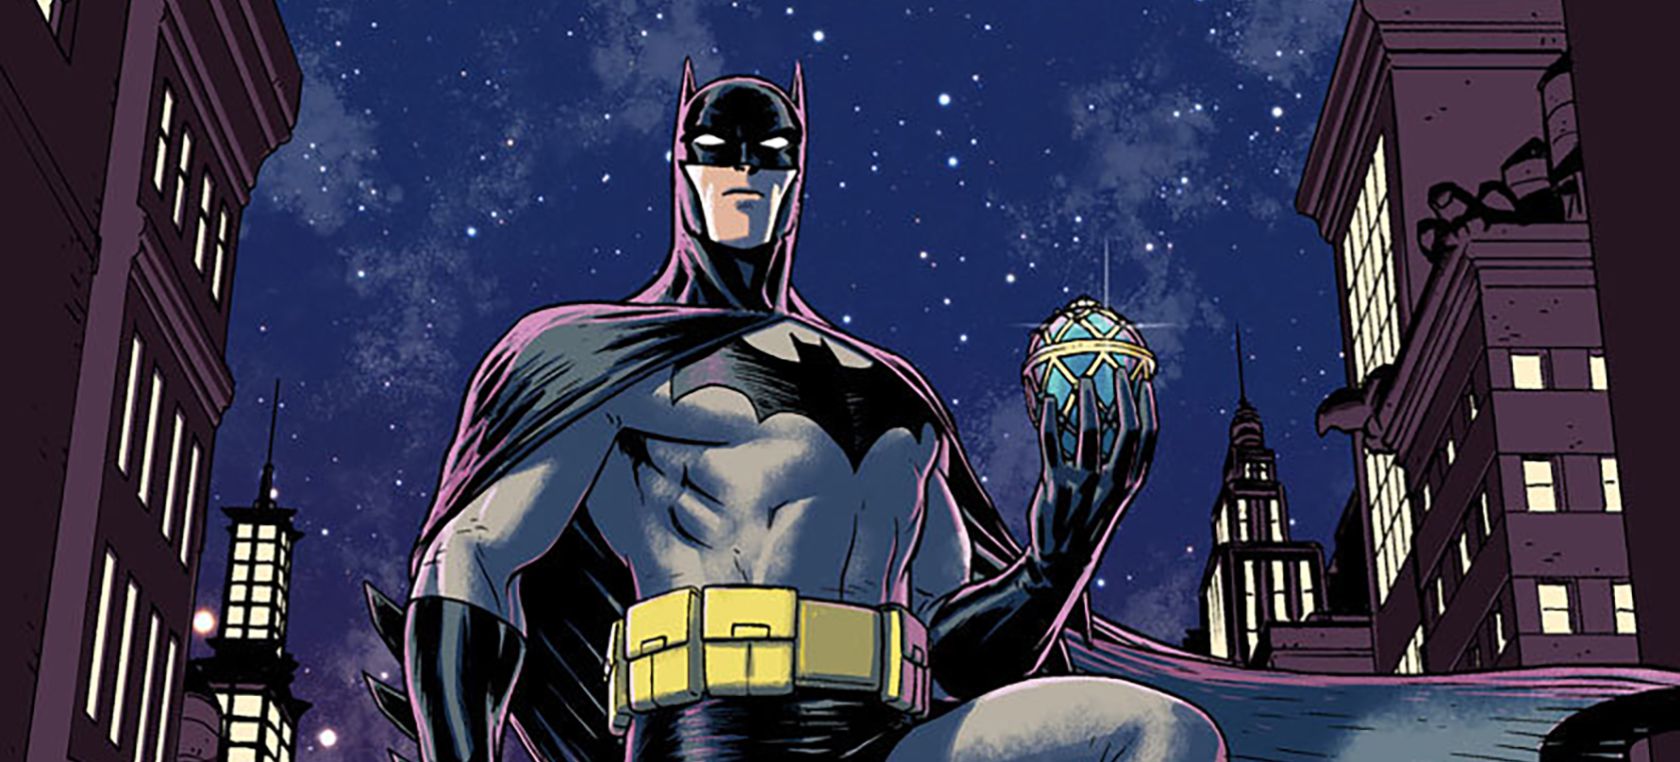 Universo Batman propone un viaje diferente para el Batman de siempre.